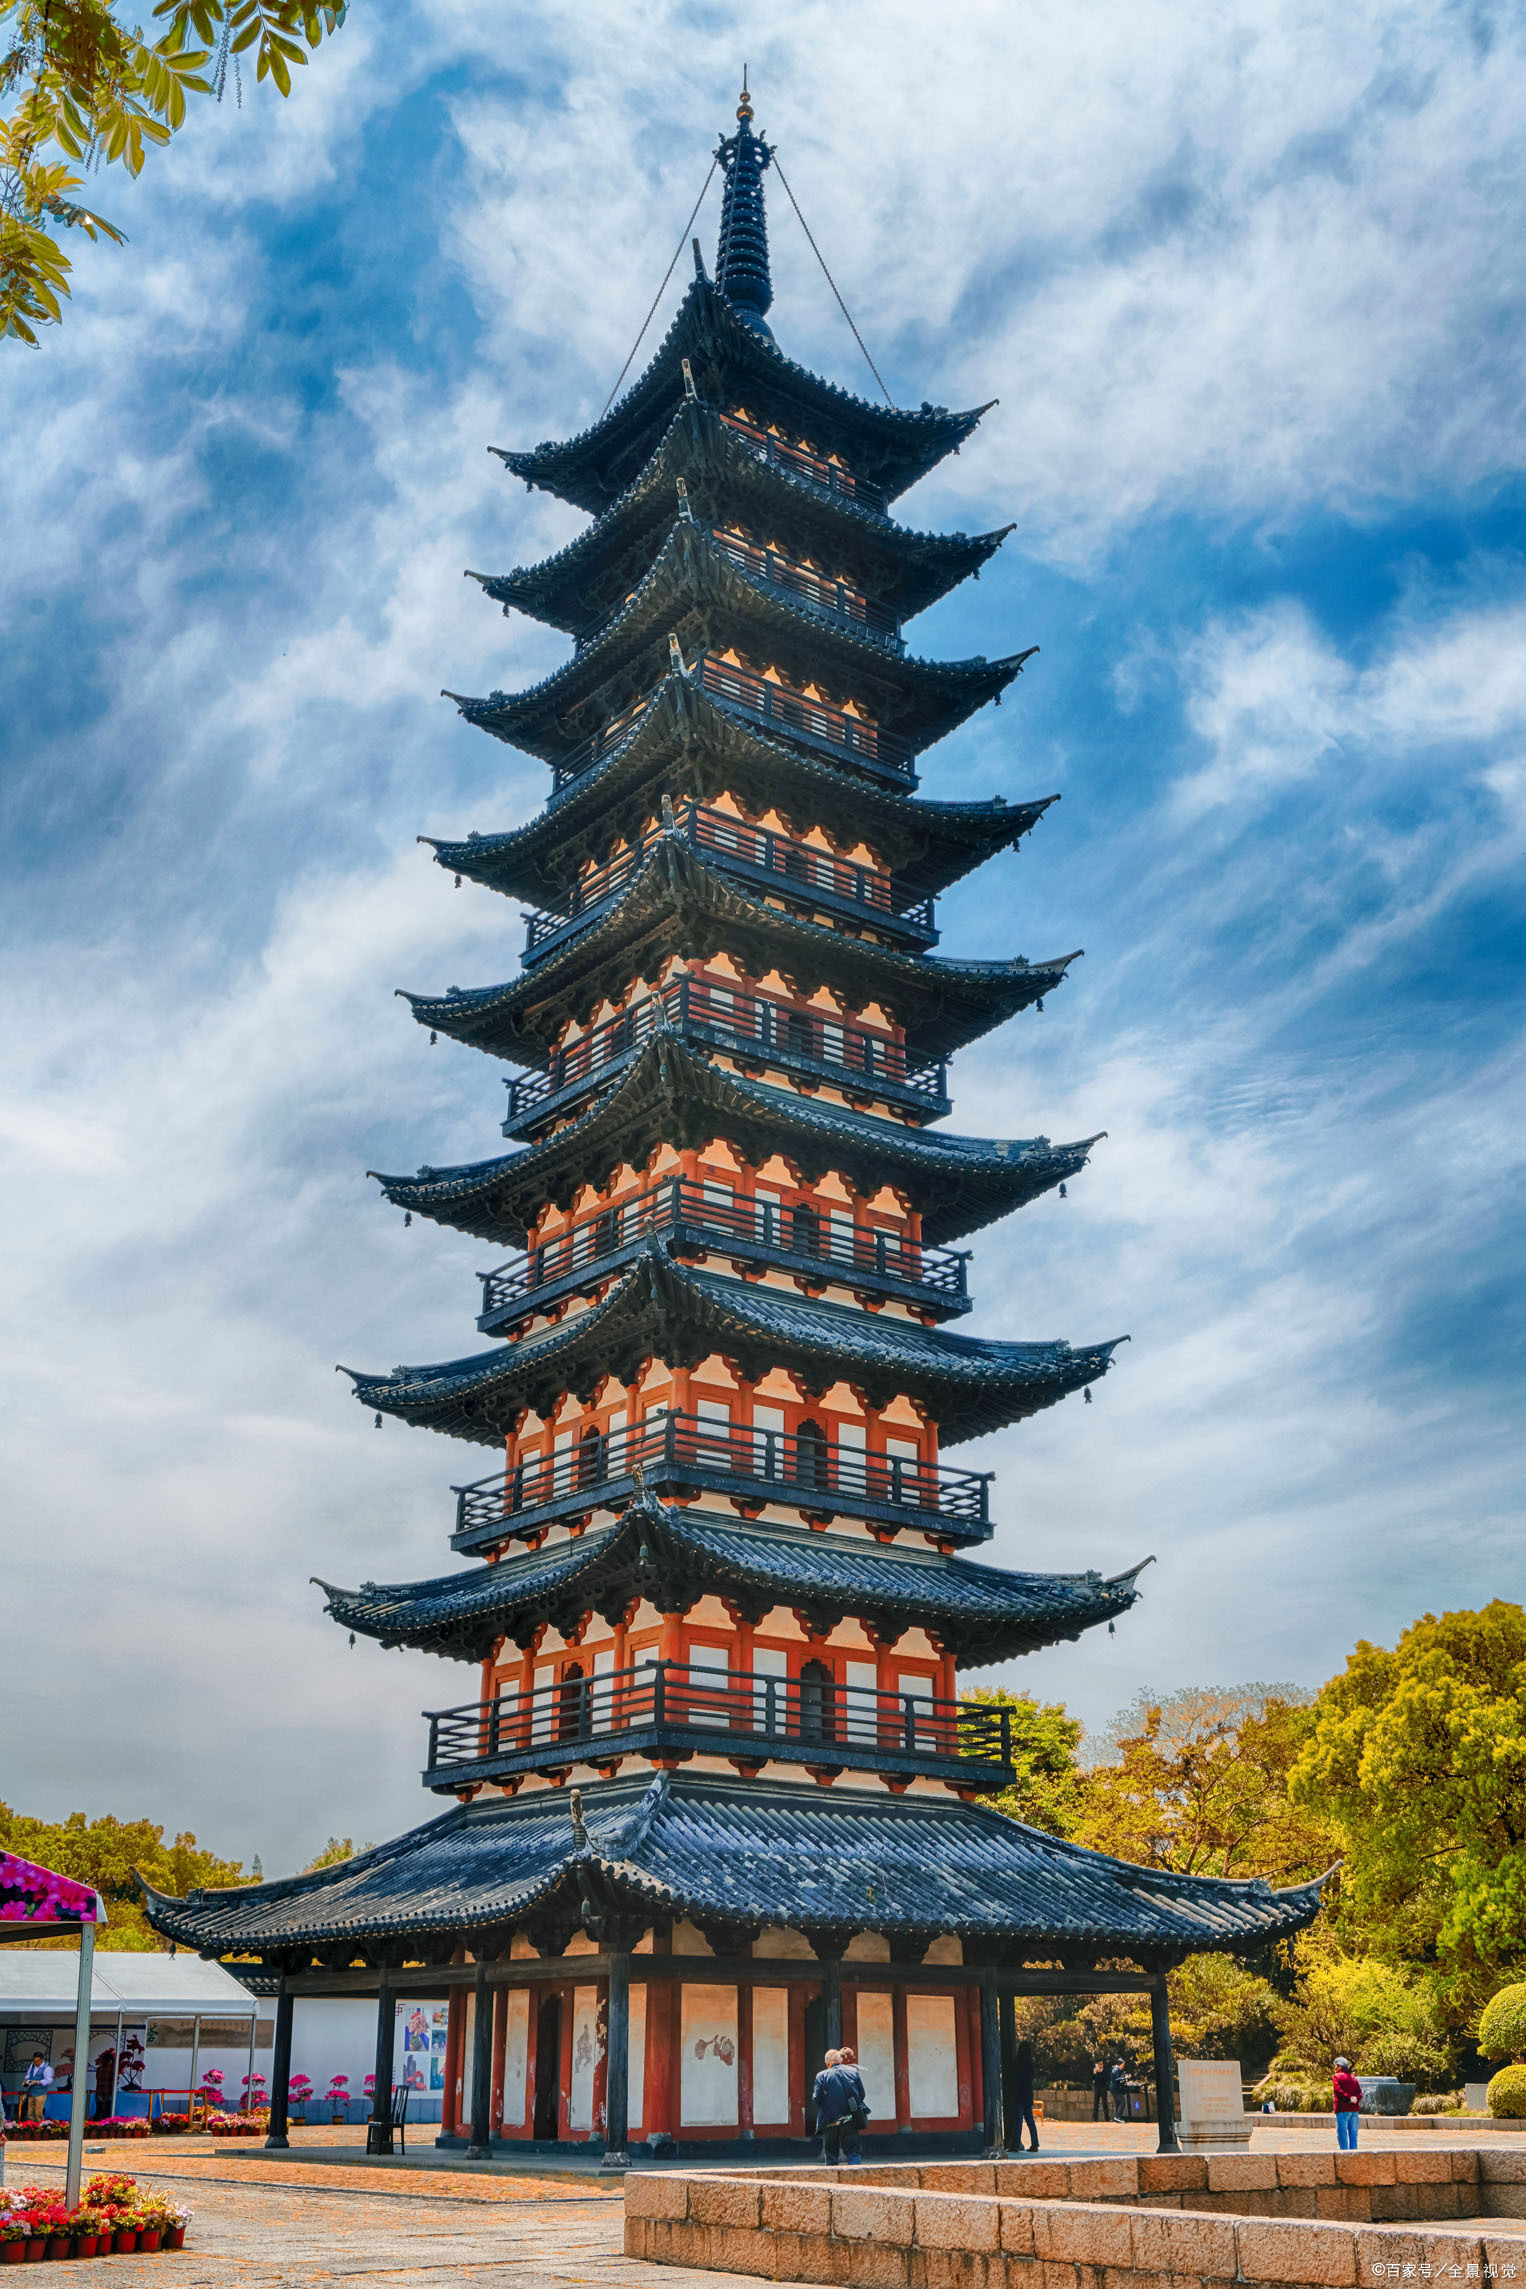 江南两座方塔,常熟方塔与上海方塔,外观相似,哪座更值得一去?